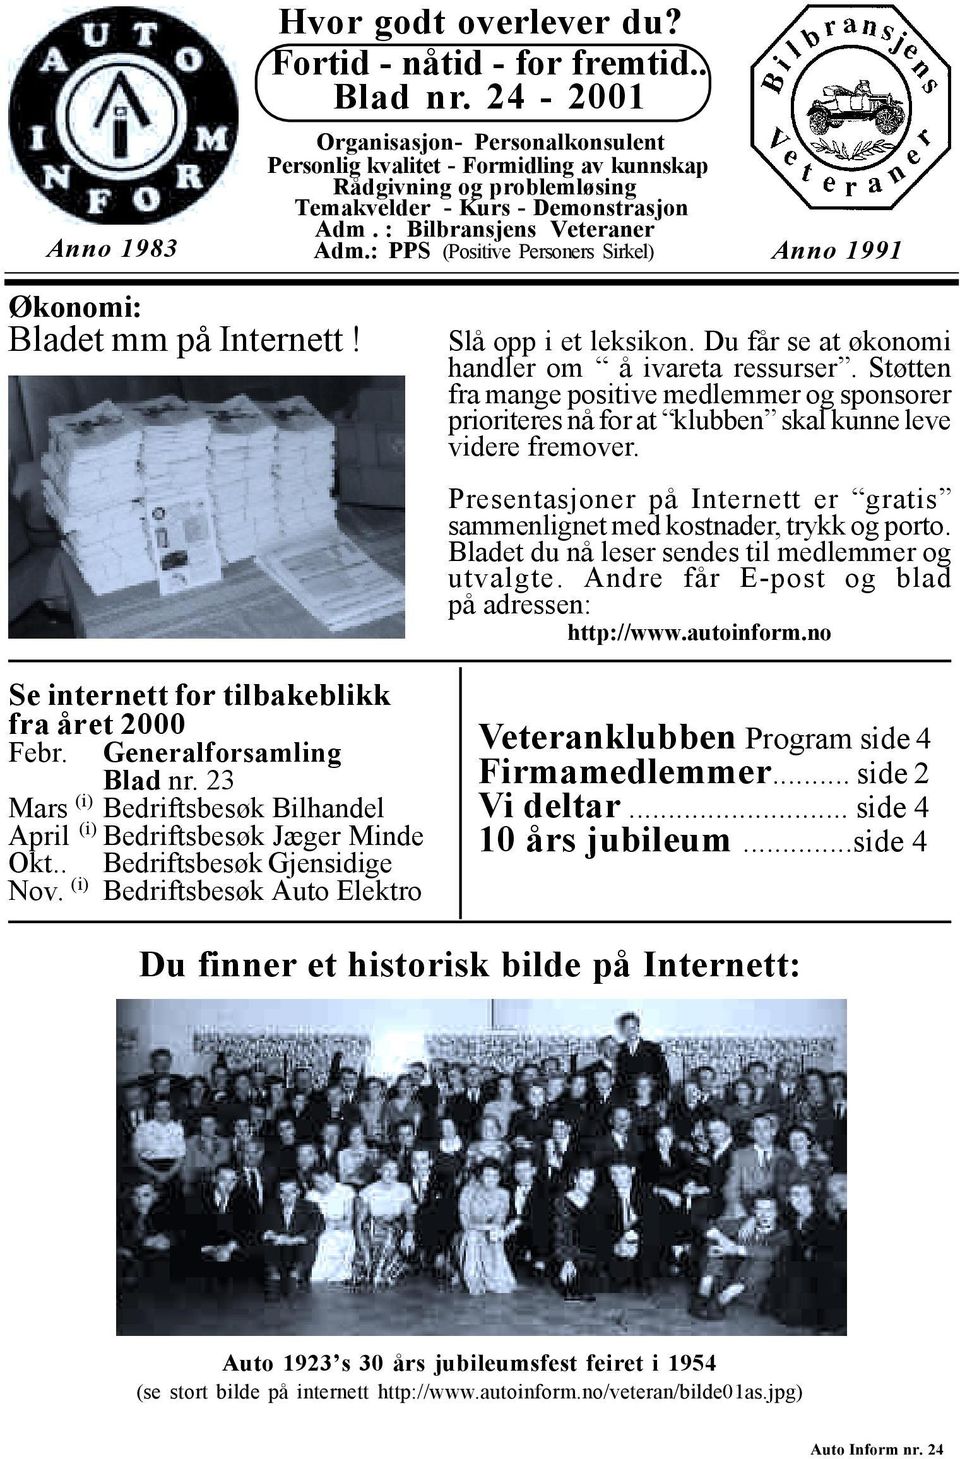 : PPS (Positive Personers Sirkel) Anno 1991 Økonomi: Bladet mm på Internett! Se internett for tilbakeblikk fra året 2000 Febr. Generalforsamling Blad nr.